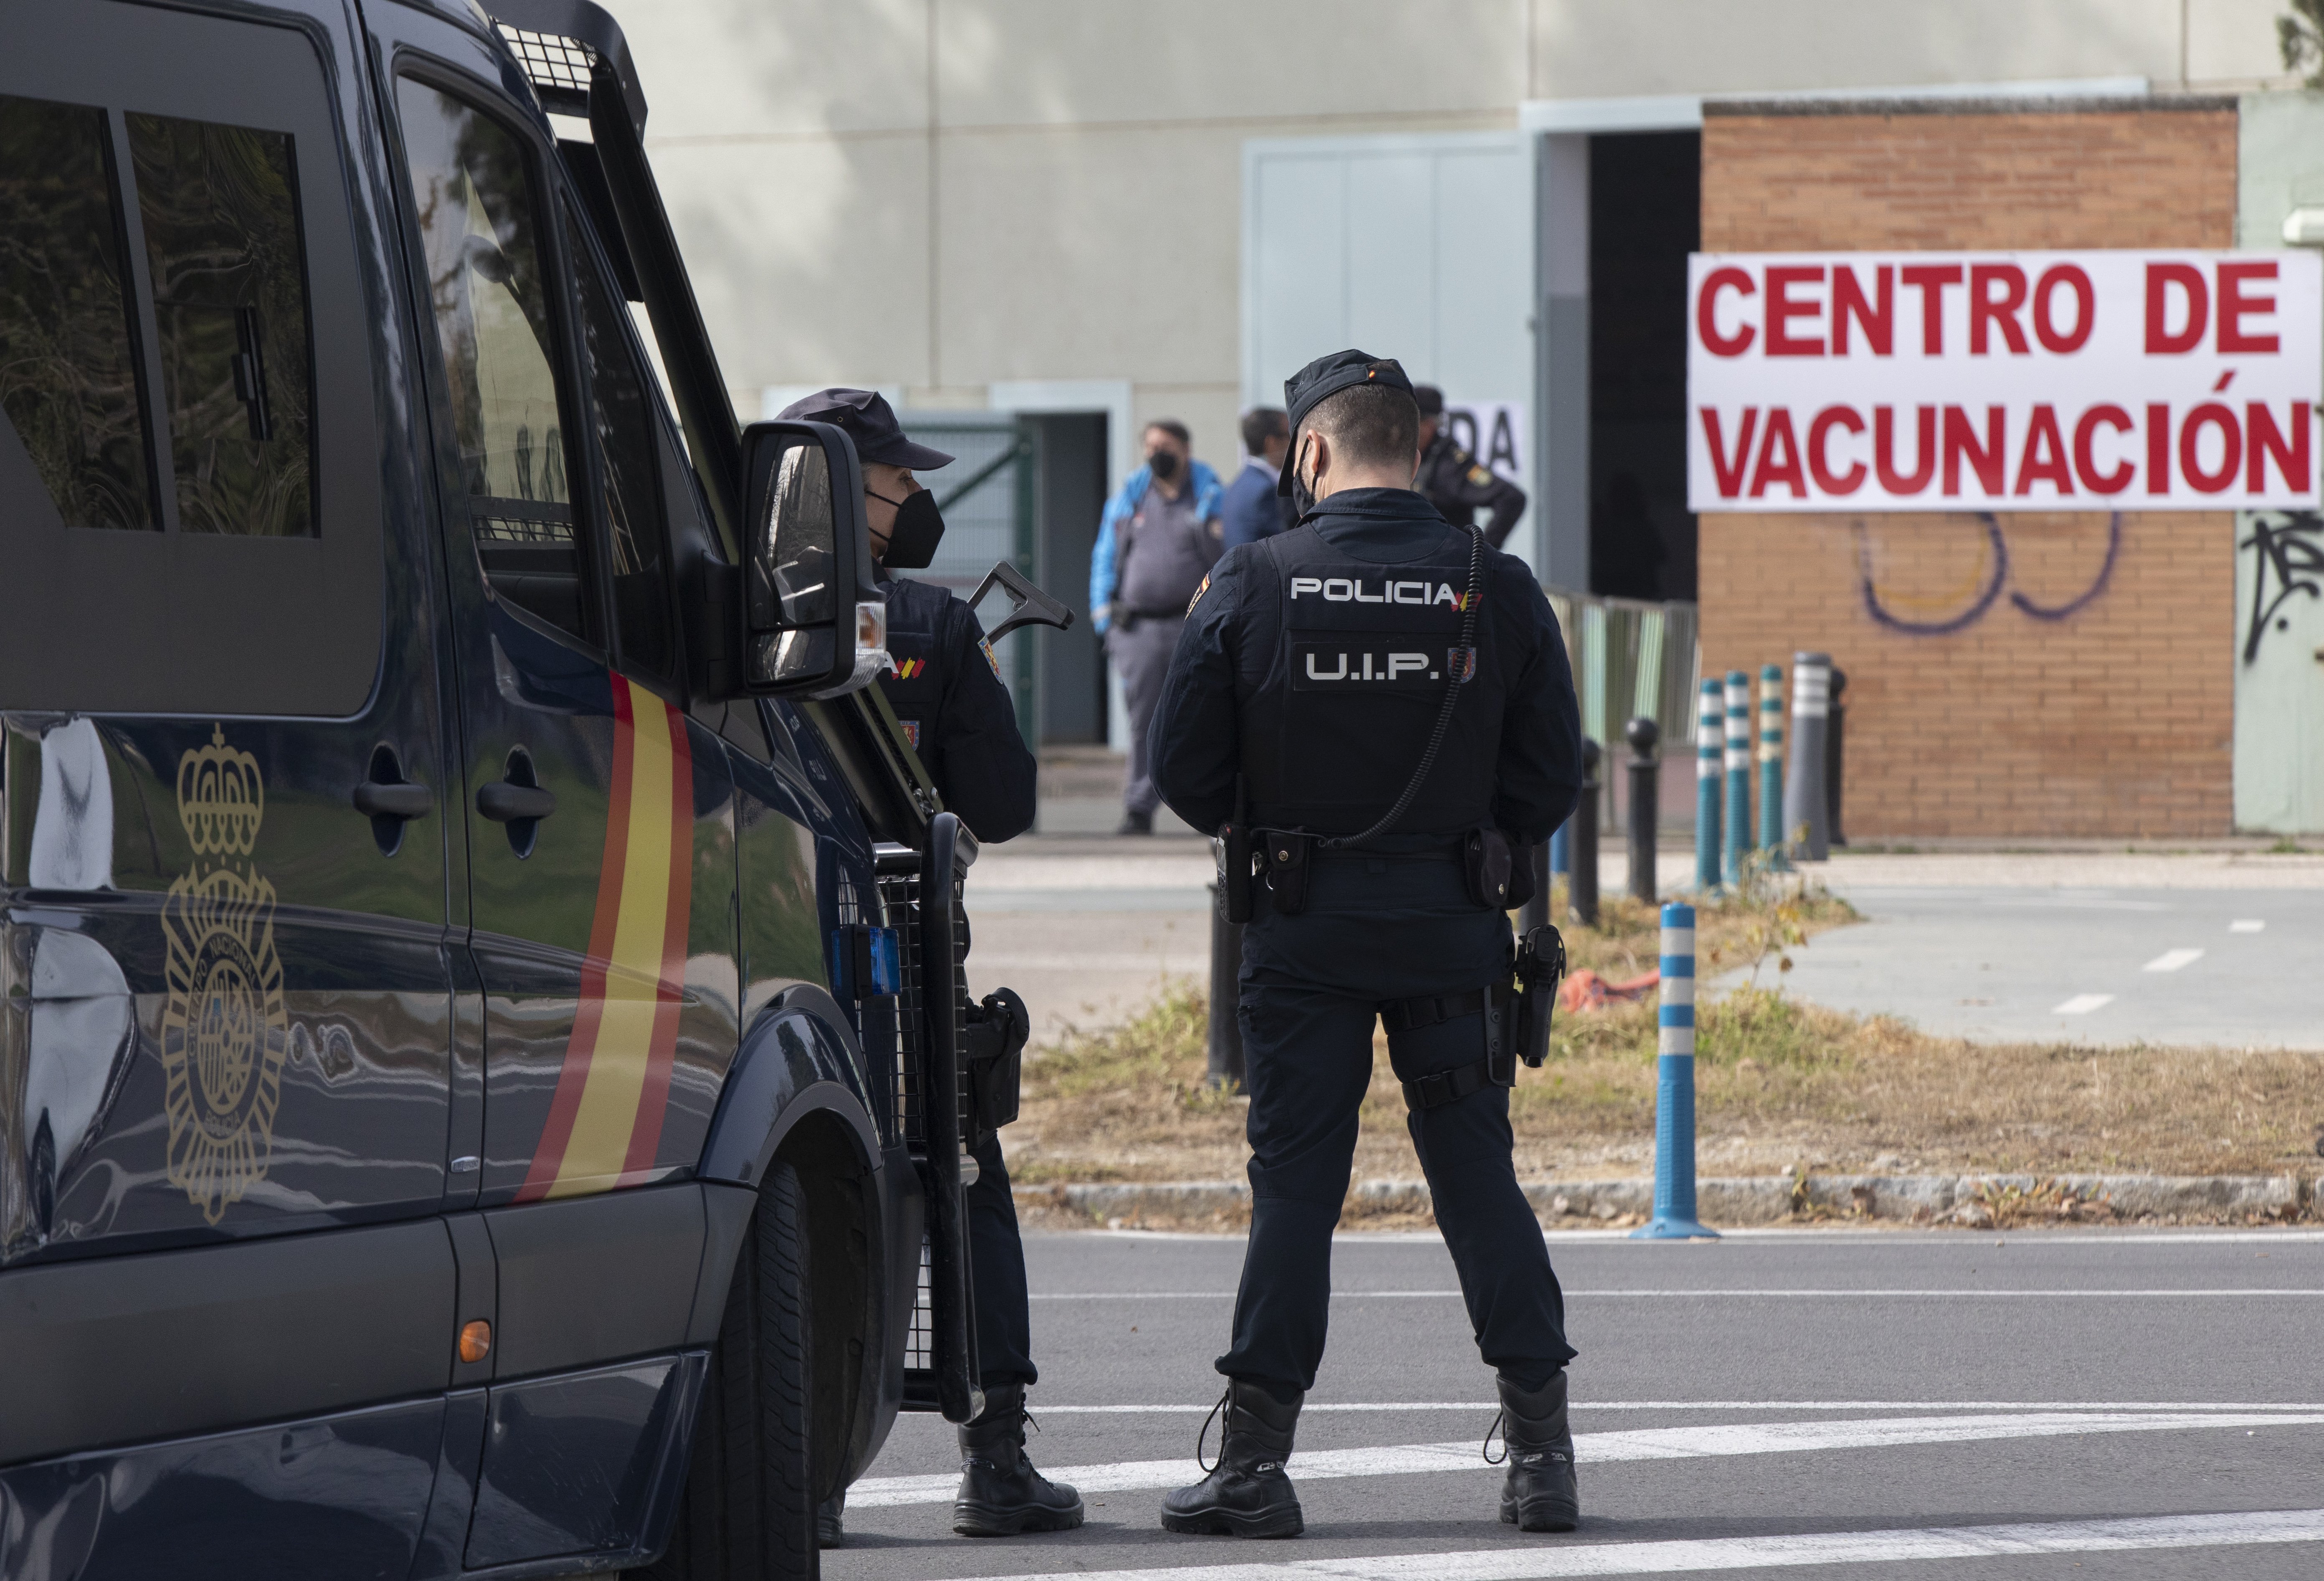 Vacunació de la policia espanyola: el jutge demana identificar els responsables